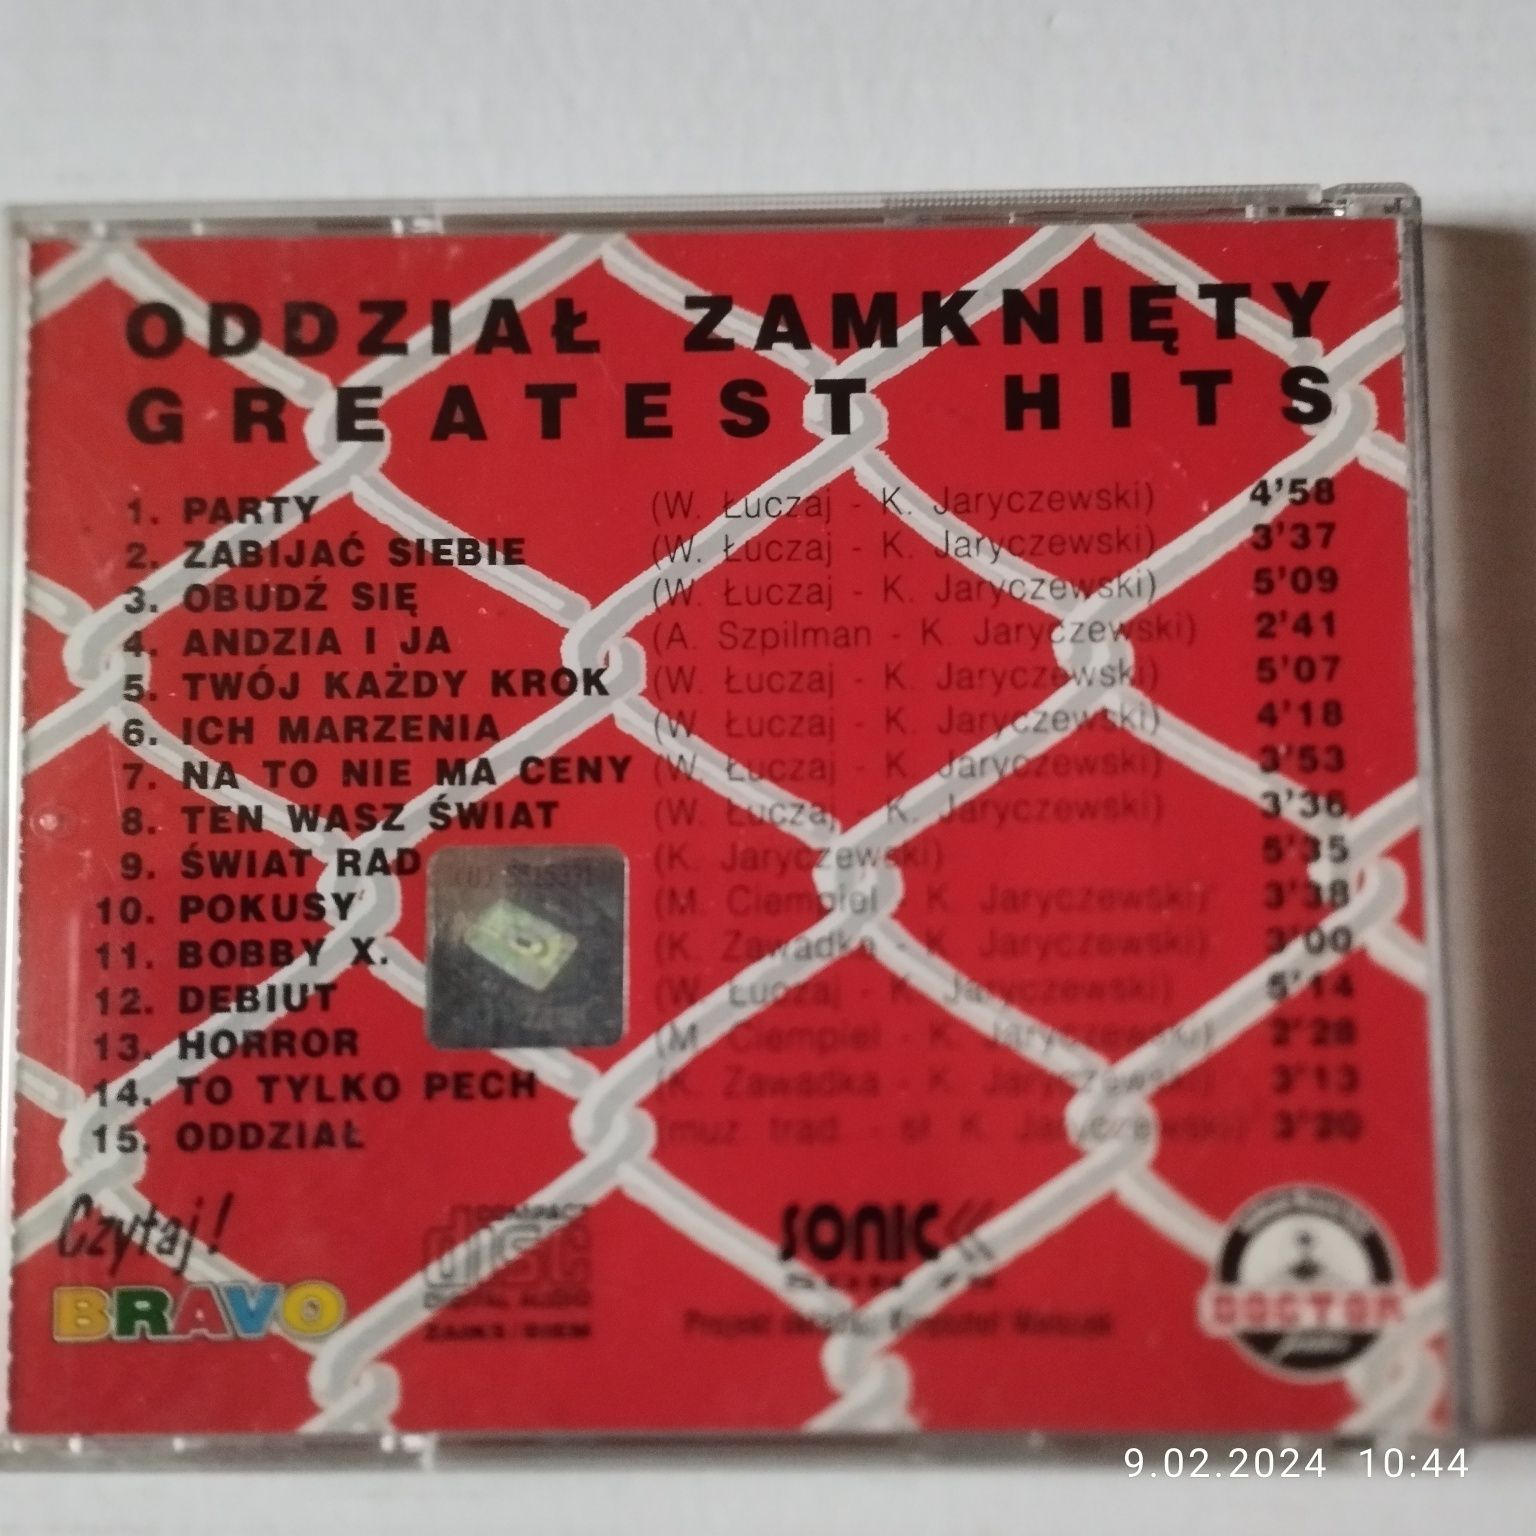 Oddział zamknięty - Greatest hits CD